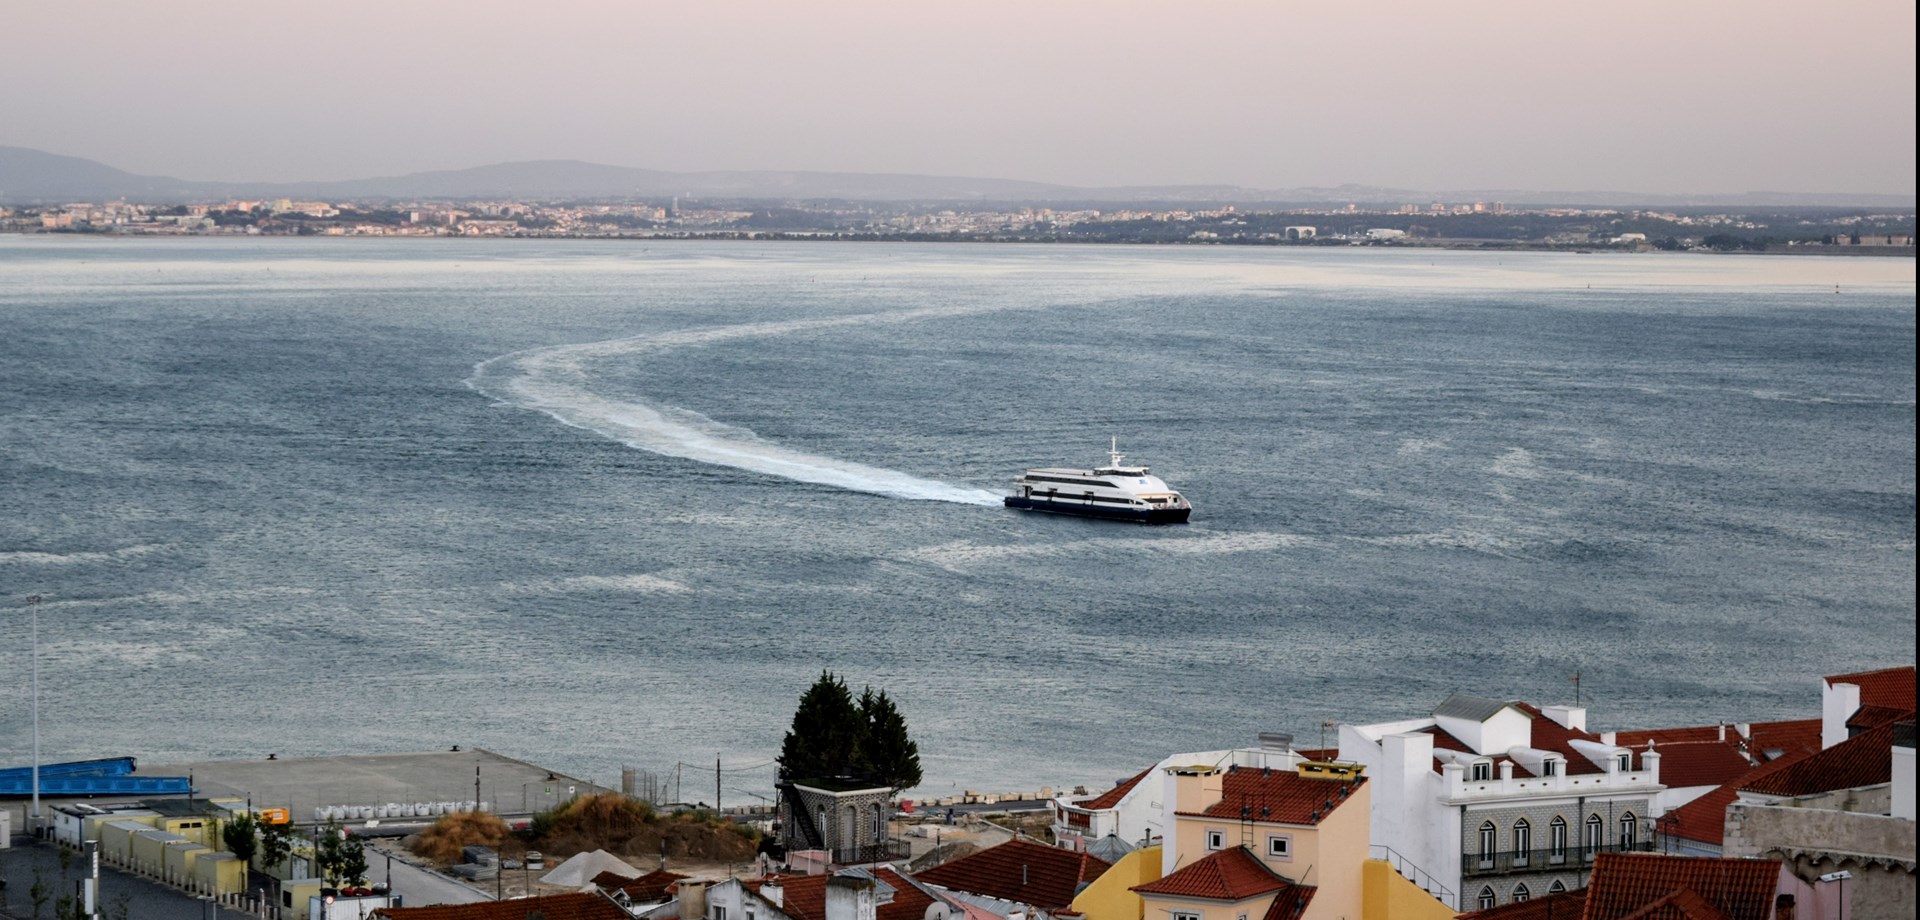 Lisbonne devient chaque jour l'une des capitales européennes les plus attrayantes pour les touristes